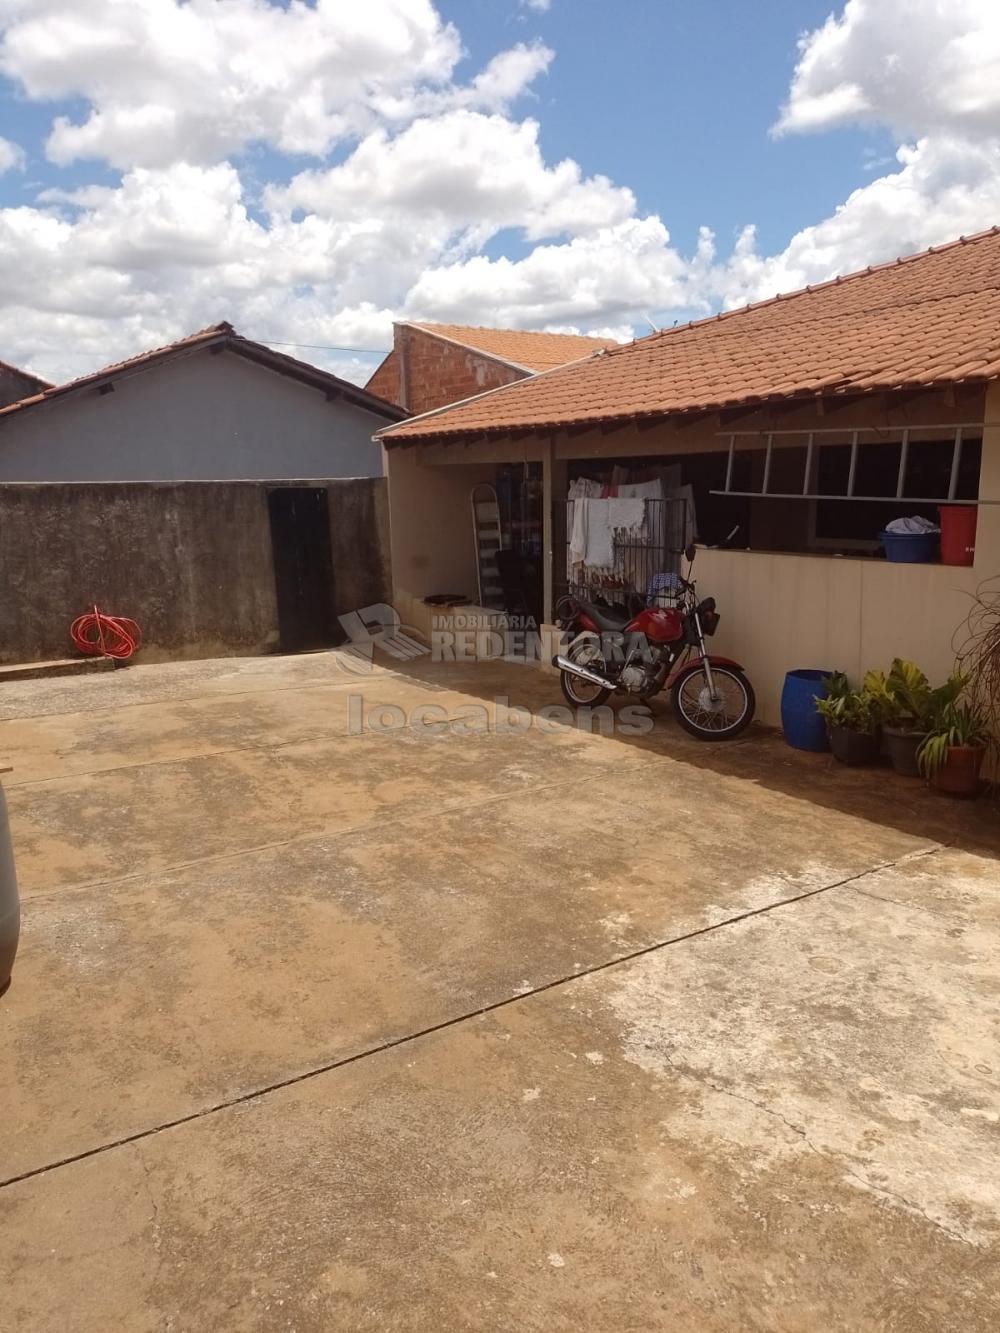 Comprar Casa / Padrão em São José do Rio Preto R$ 460.000,00 - Foto 16